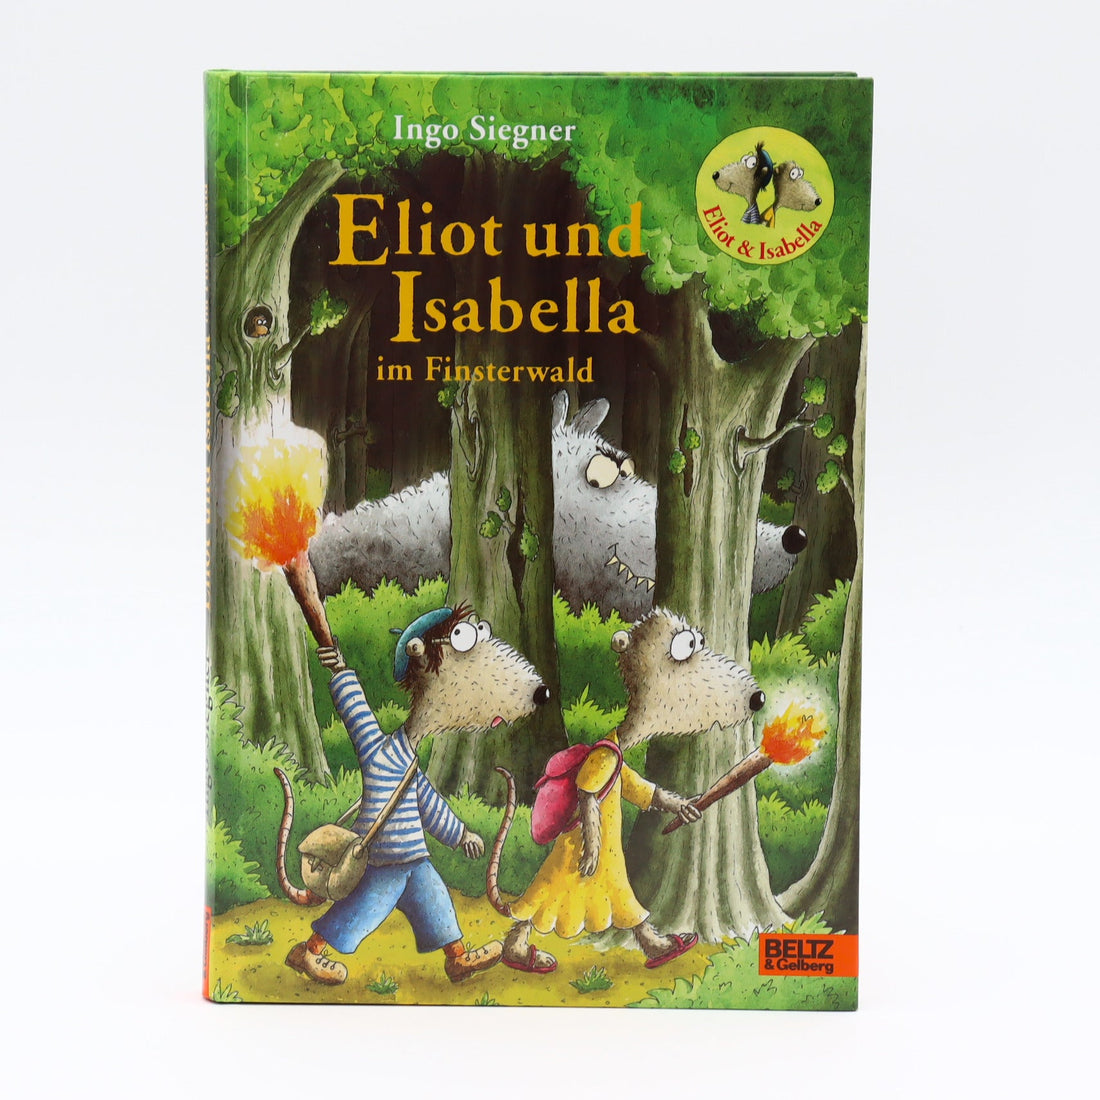 Grundschul-Buch - BELTZ - Eliot und Isabella - Eliot und Isabella im Finsterwald